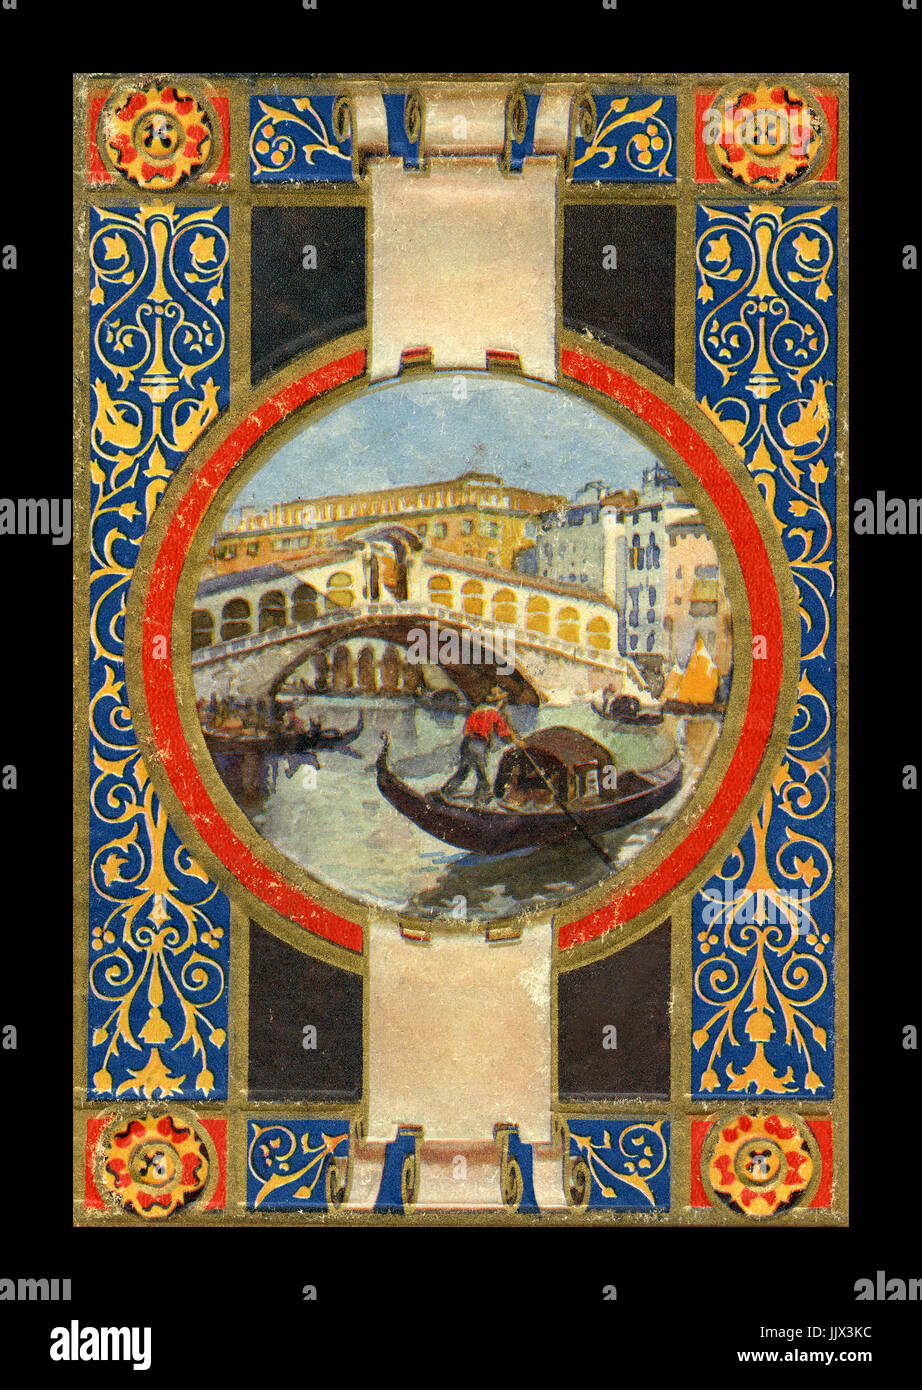 HISTORIC VENICE 1900's ANTIQUARIAN ILLUSTRATED GUIDE BOOK 'RICORDO de VENEZIA with ornate cover illustration Stock Photo